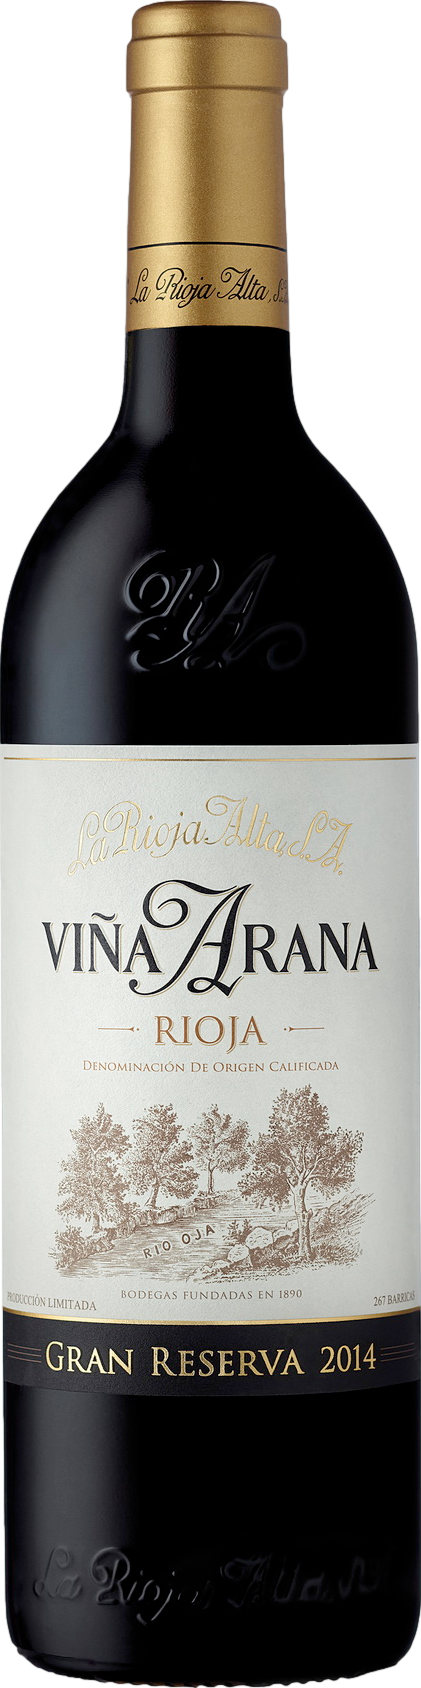 La Rioja Alta Gran Reserva Vina Arana 2014